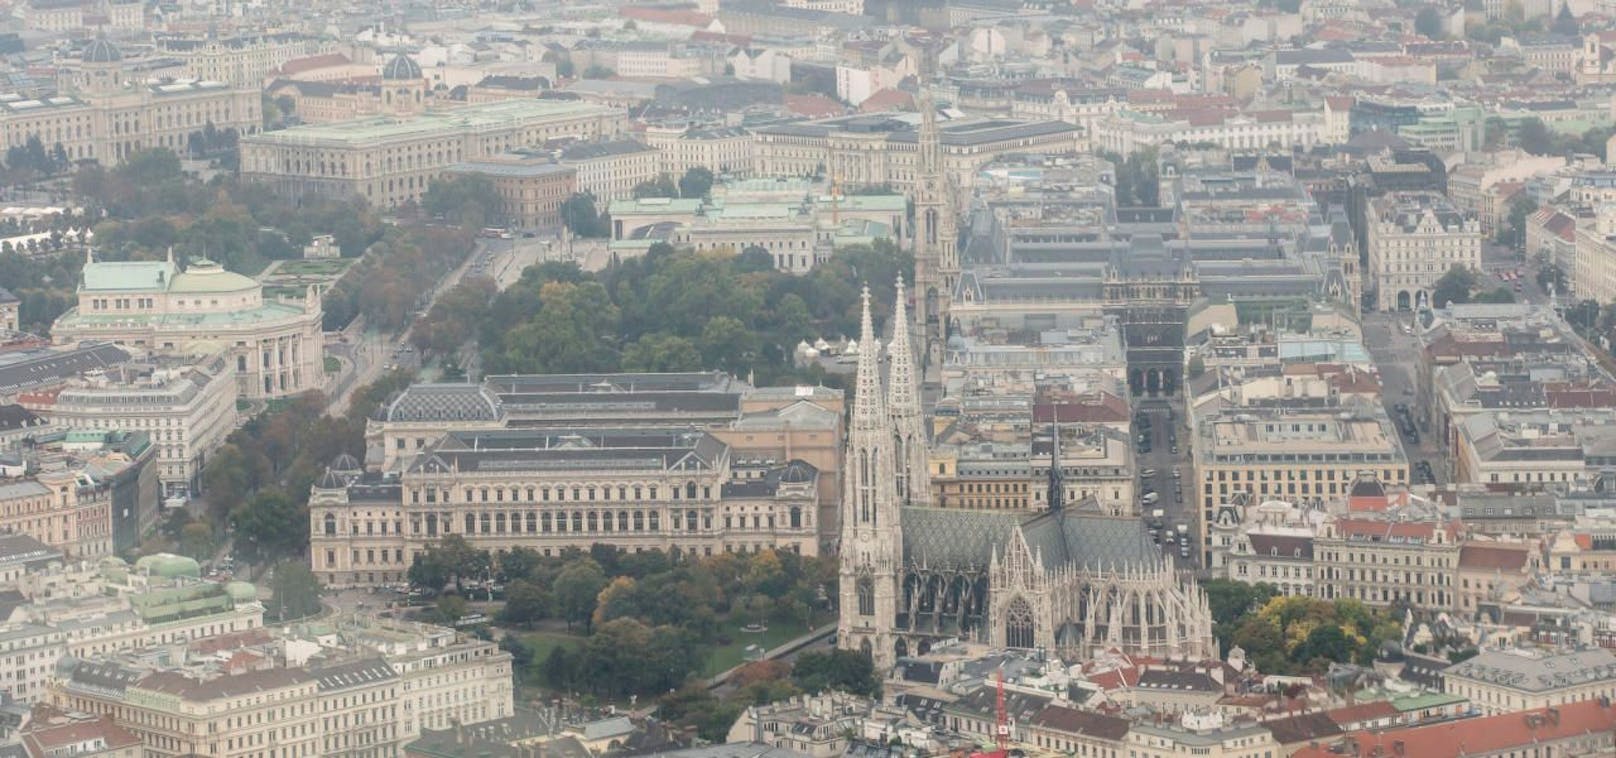 Die Wiener Votivkirche, eine römisch-katholische Kirche befindet sich nahe der Ringstraße, hinter dem Hauptgebäude der Universität Wien und gilt als eines der bedeutendsten neugotischen Sakralbauwerke der Welt.